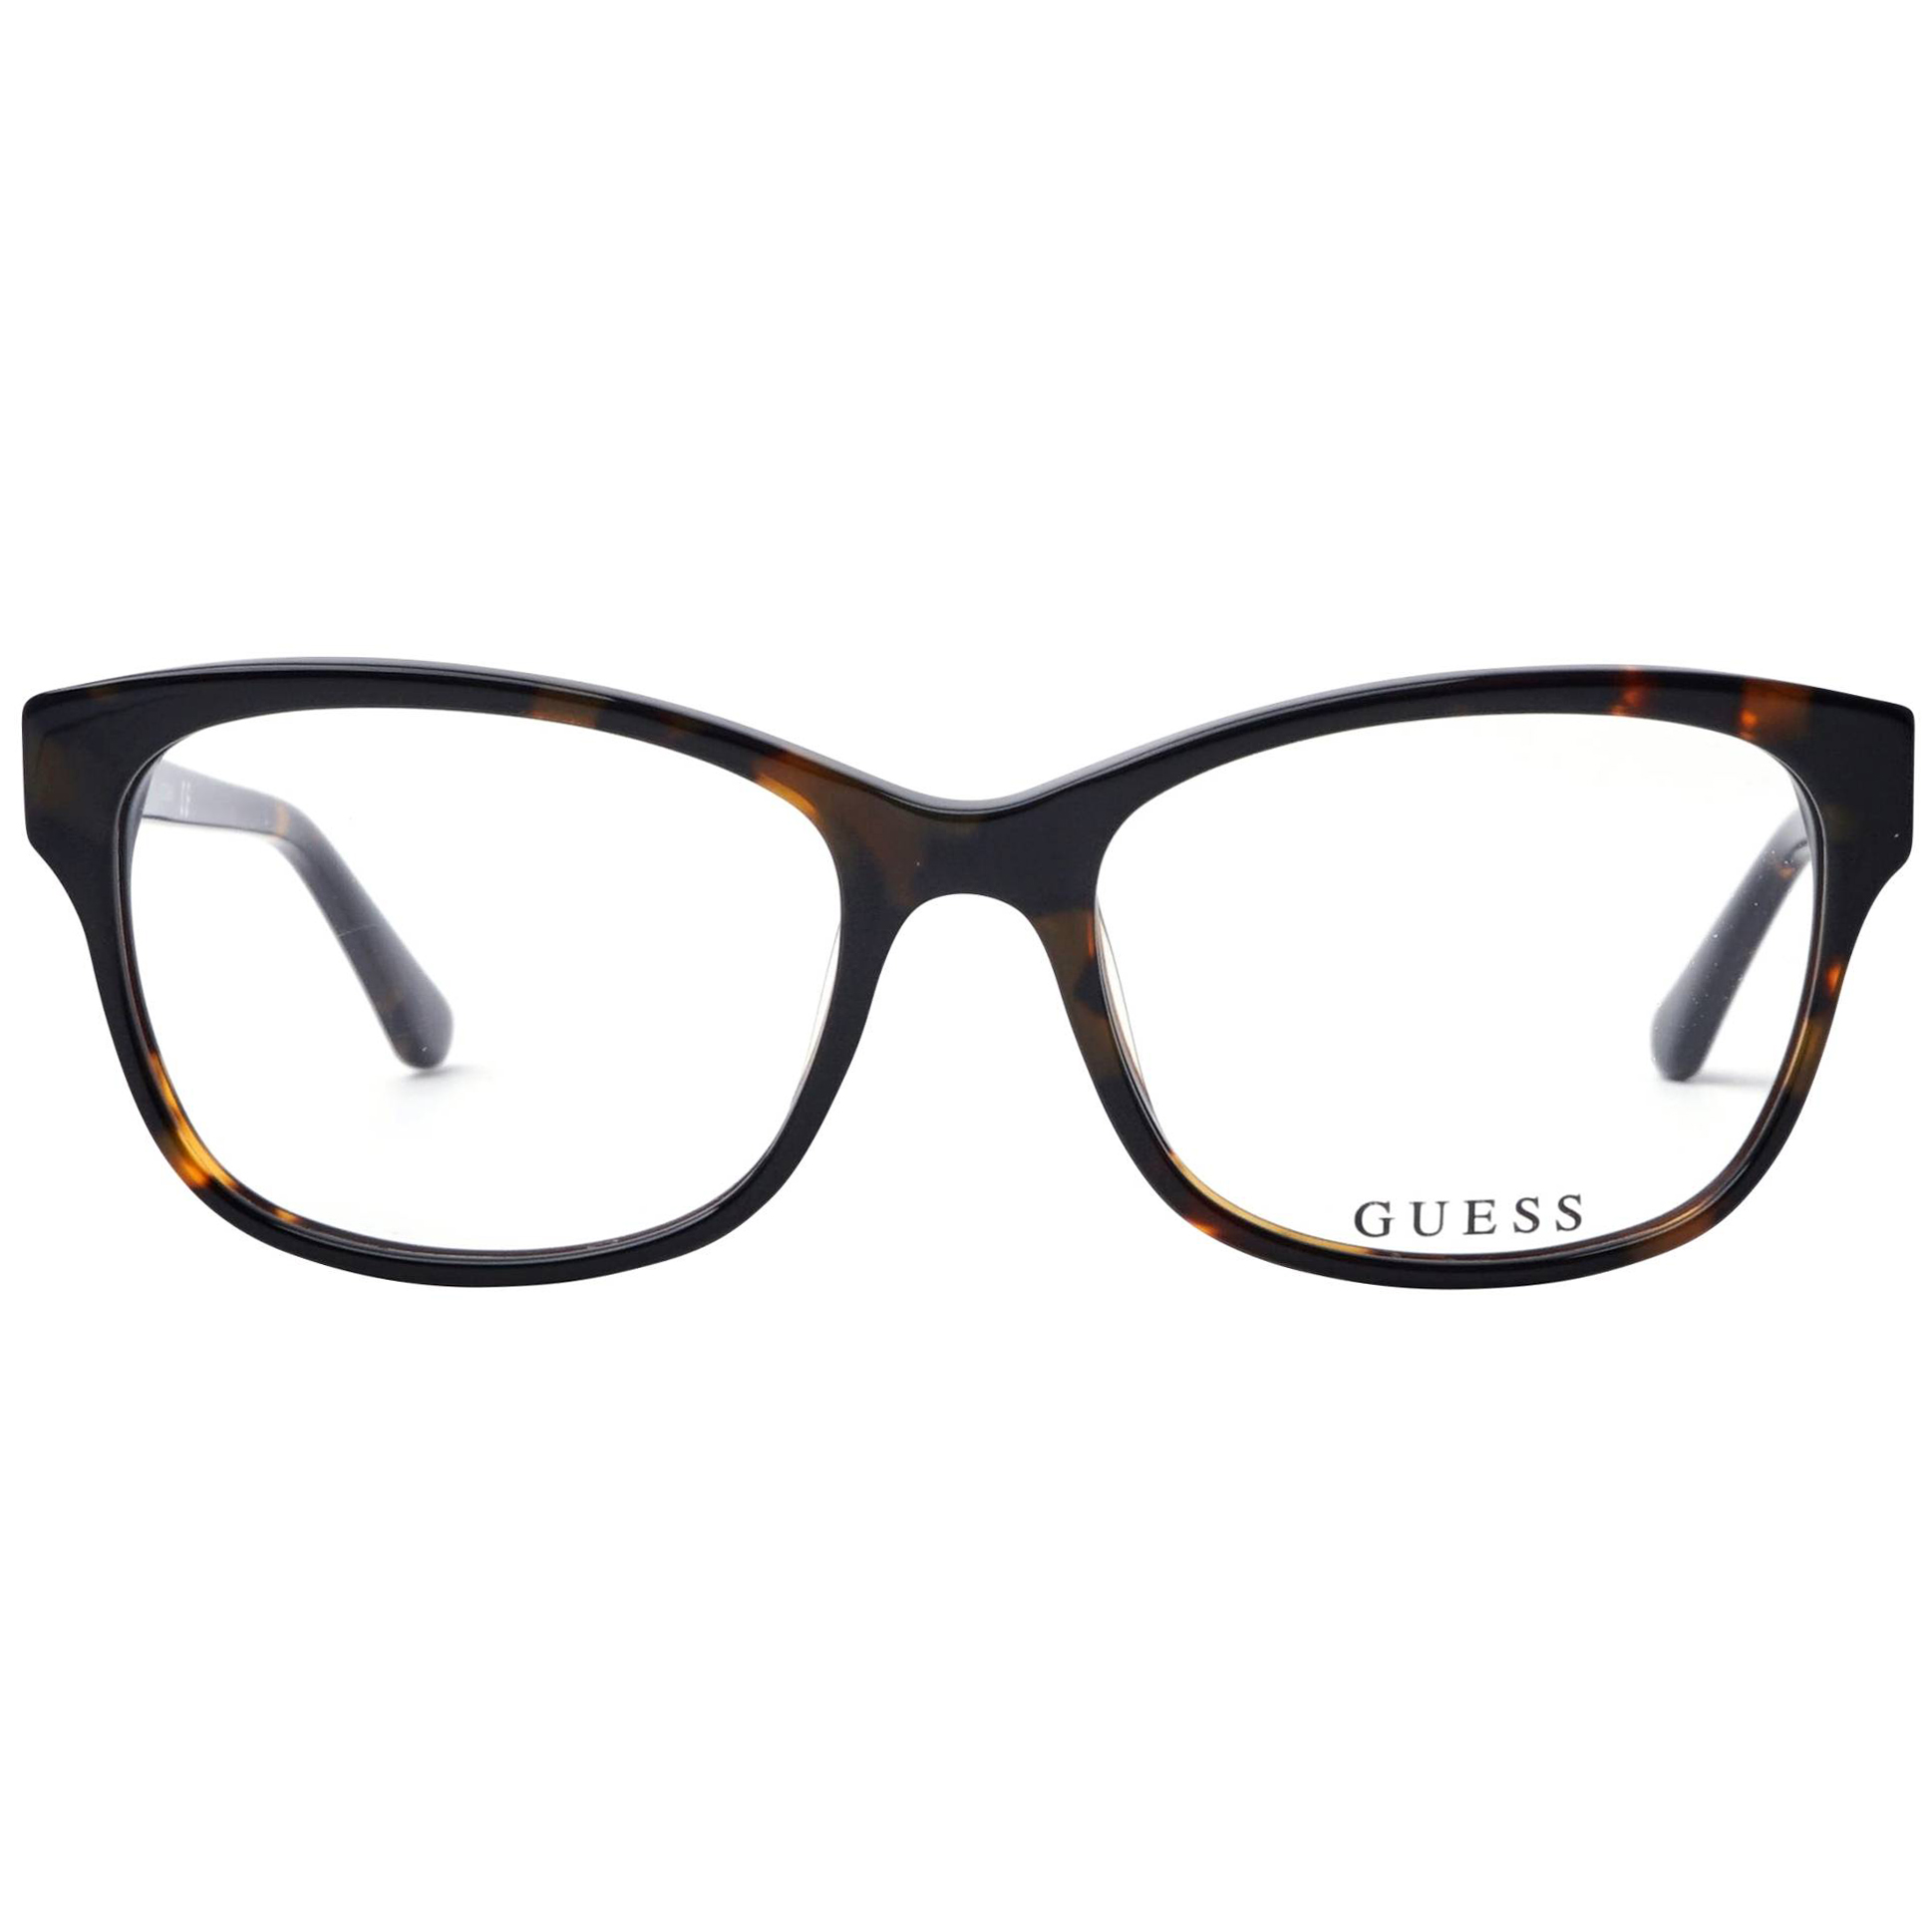 فریم عینک طبی زنانه گس مدل GU249605254